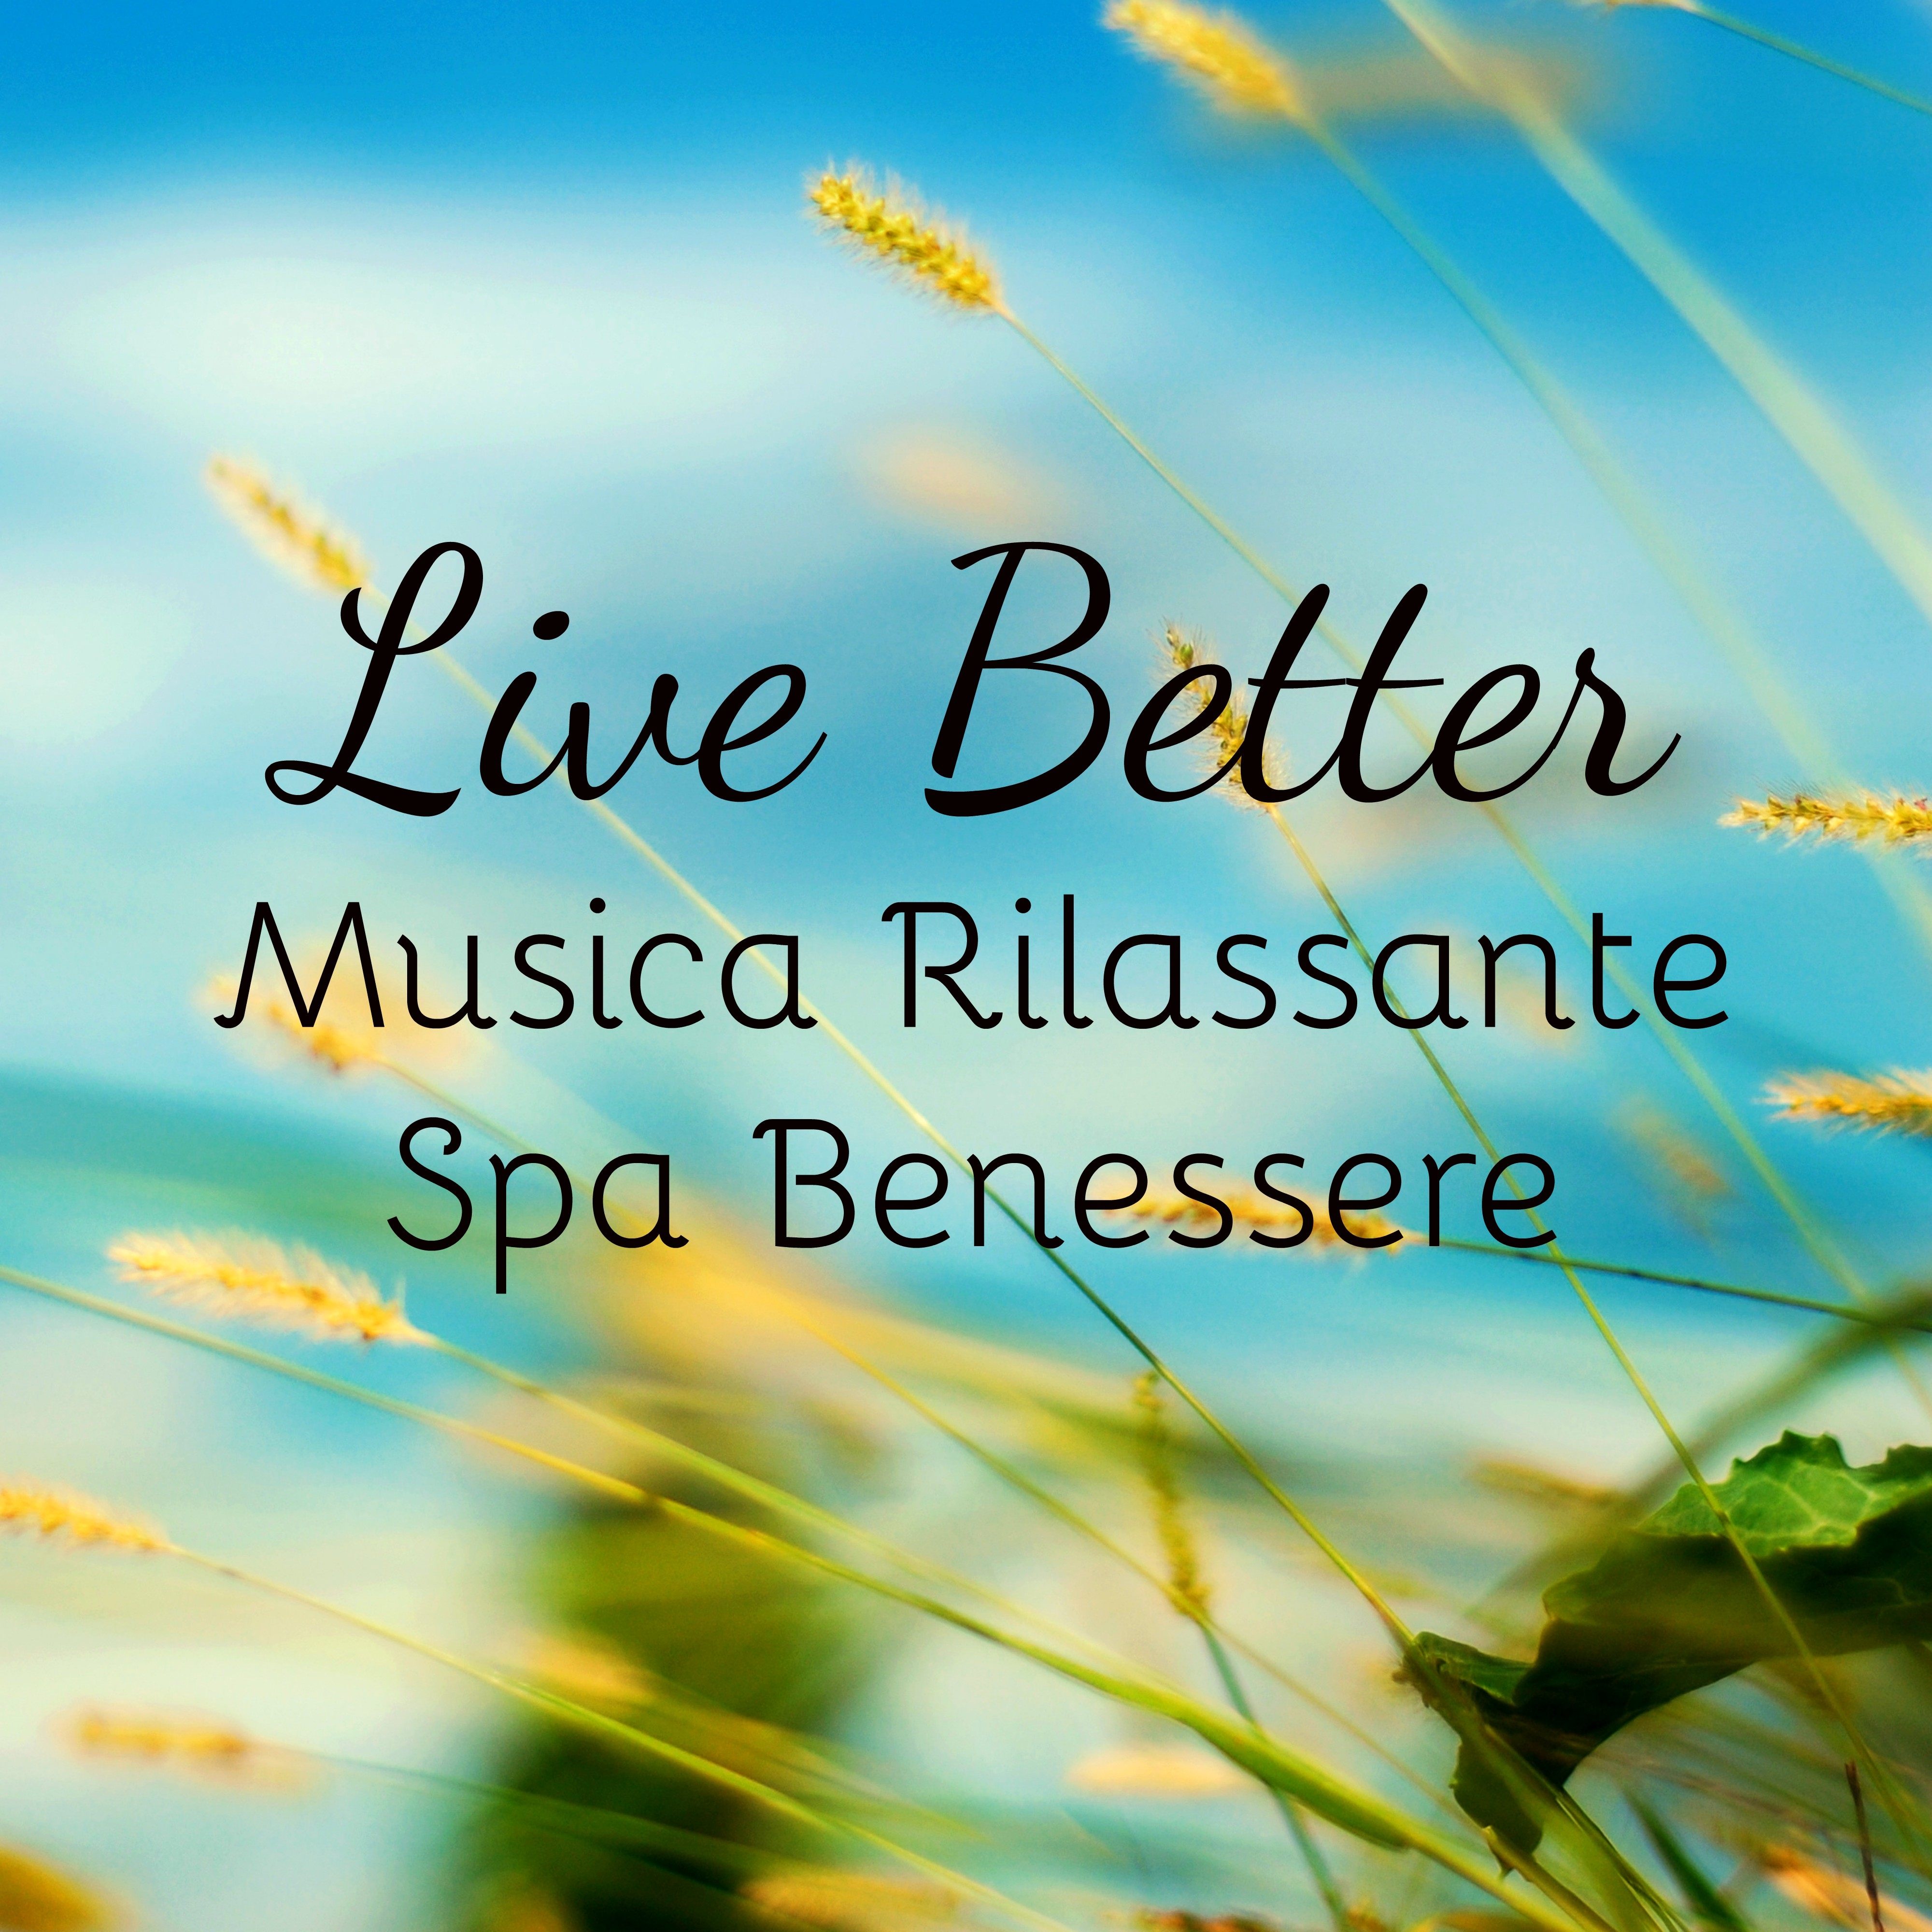 Live Better - Musica Rilassante Spa Benessere per Studiare Potere della Mente e Rimedi Naturali